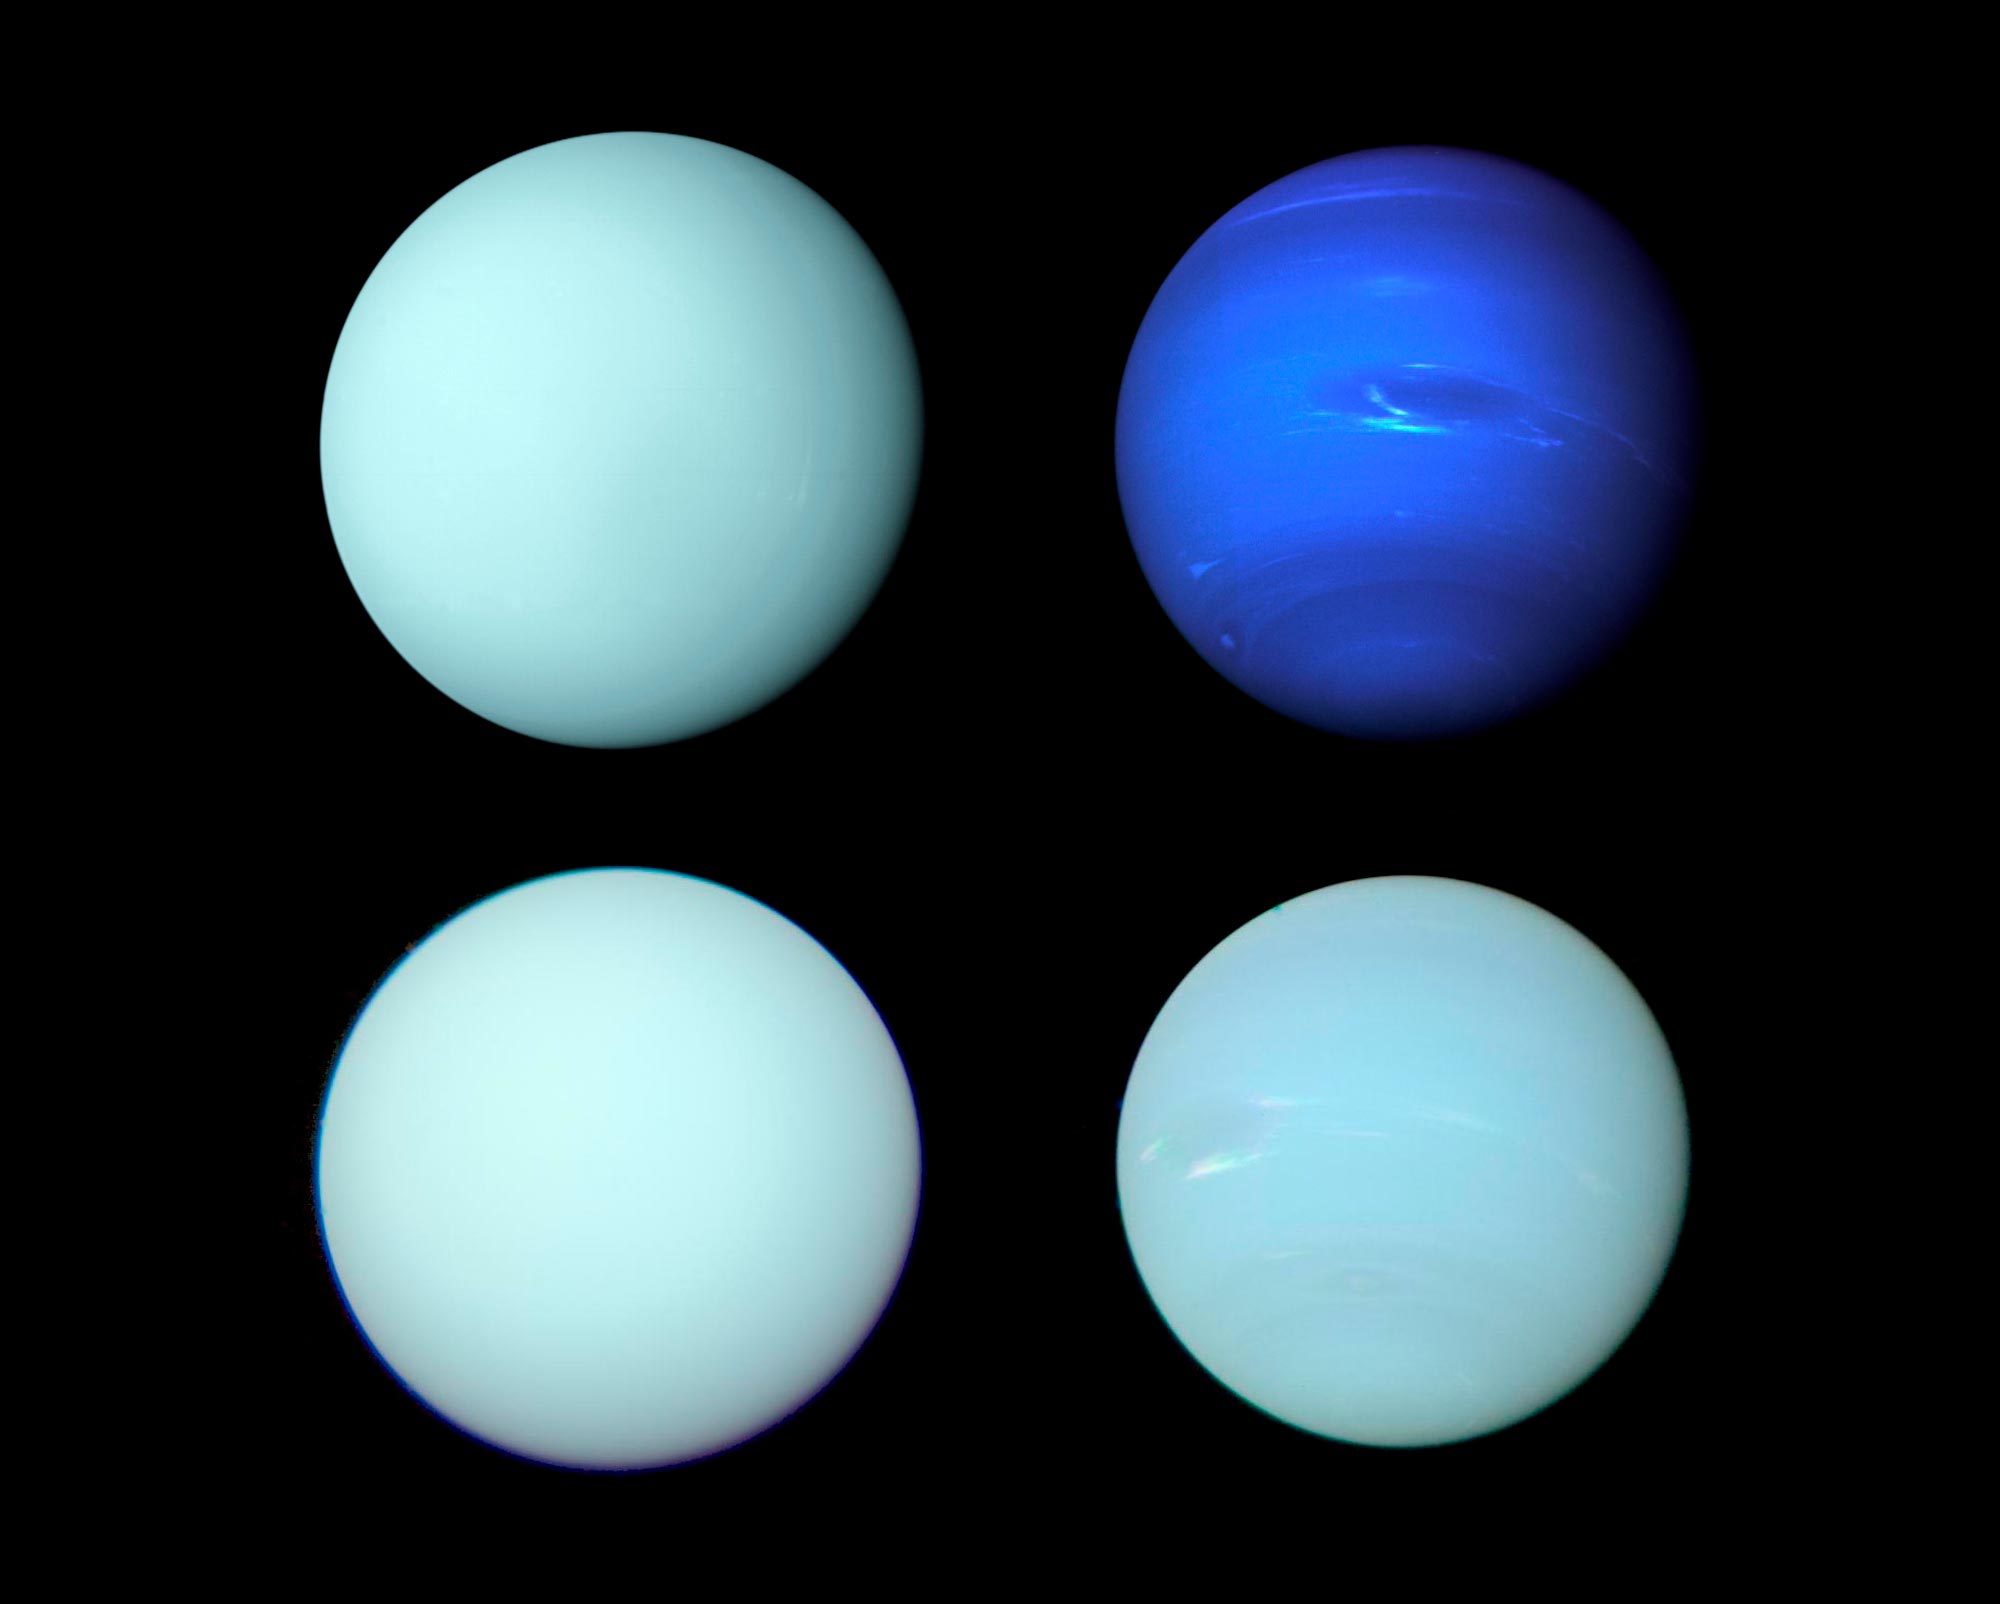 新しい画像により、海王星と天王星の実際の姿が明らかになりました